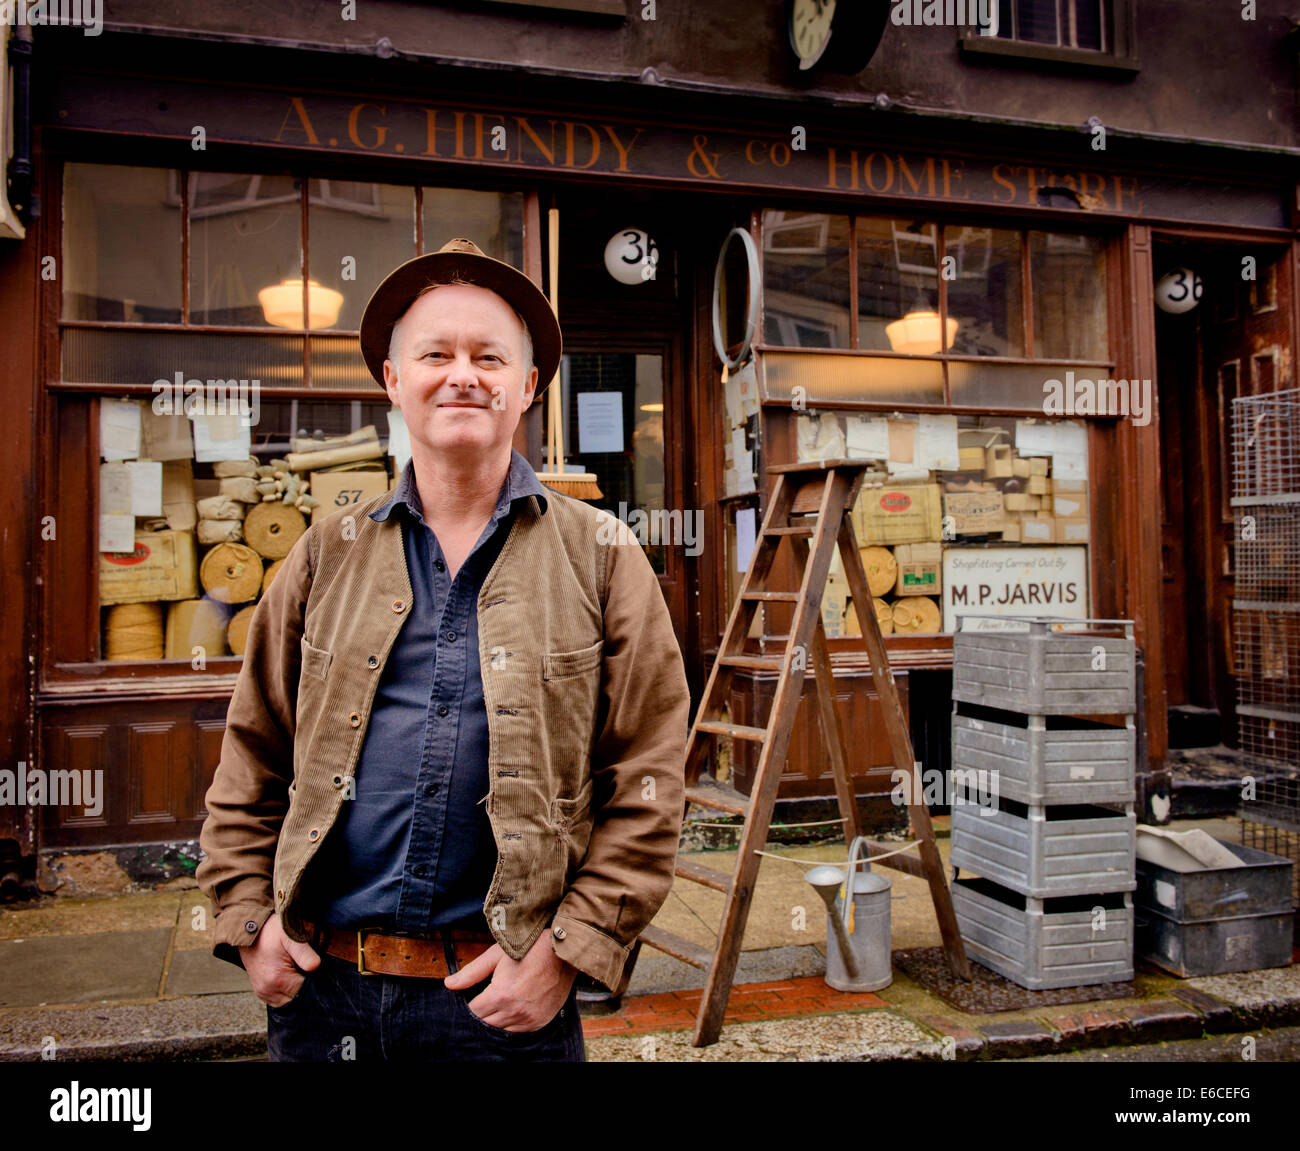 Alastair Hendy A.G.Hendy & Co legen eine beliebte Hastings alte altmodische wie in einer Zeitschleife. Stockfoto